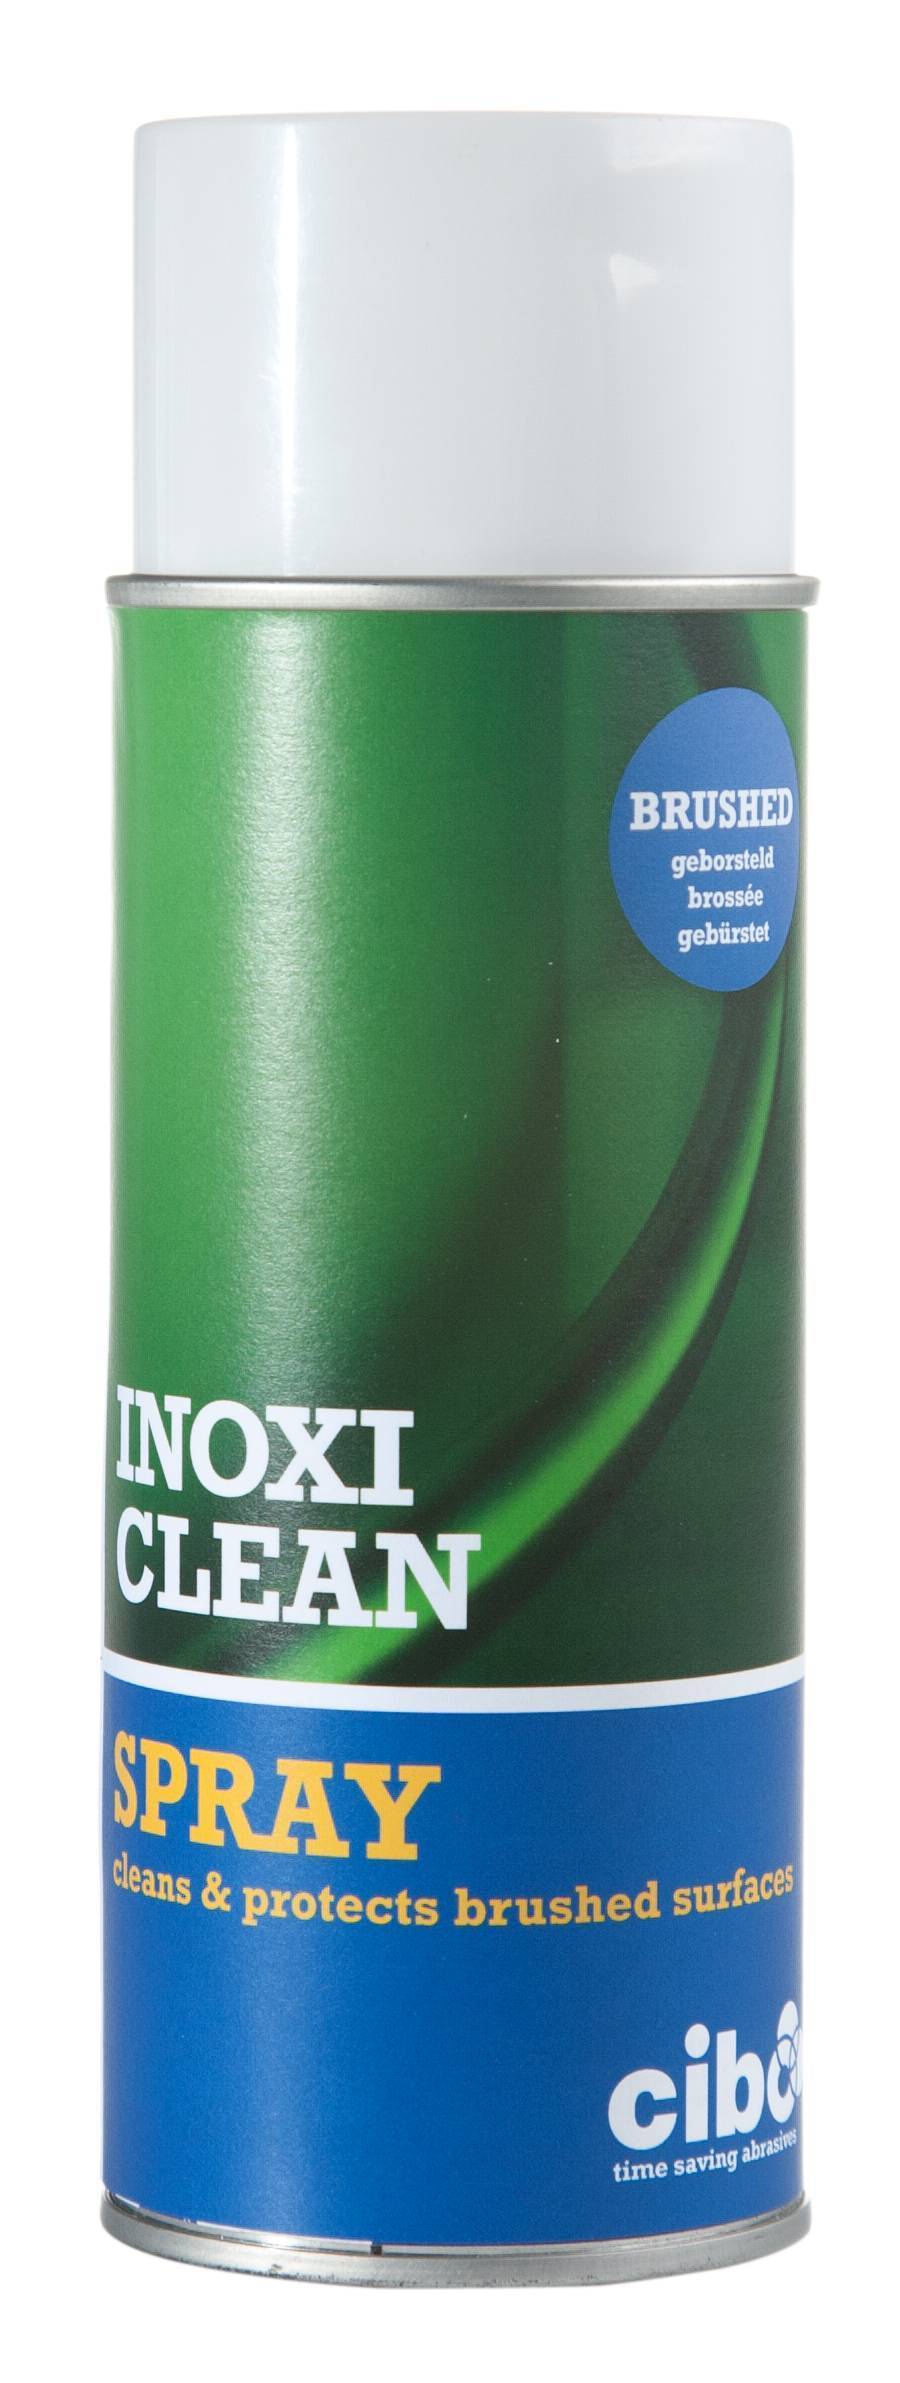 Σπρέυ Καθαρισμού/Γυαλίσματος Ινοχ "Inoxiclean Spray"             400Ml Cibo